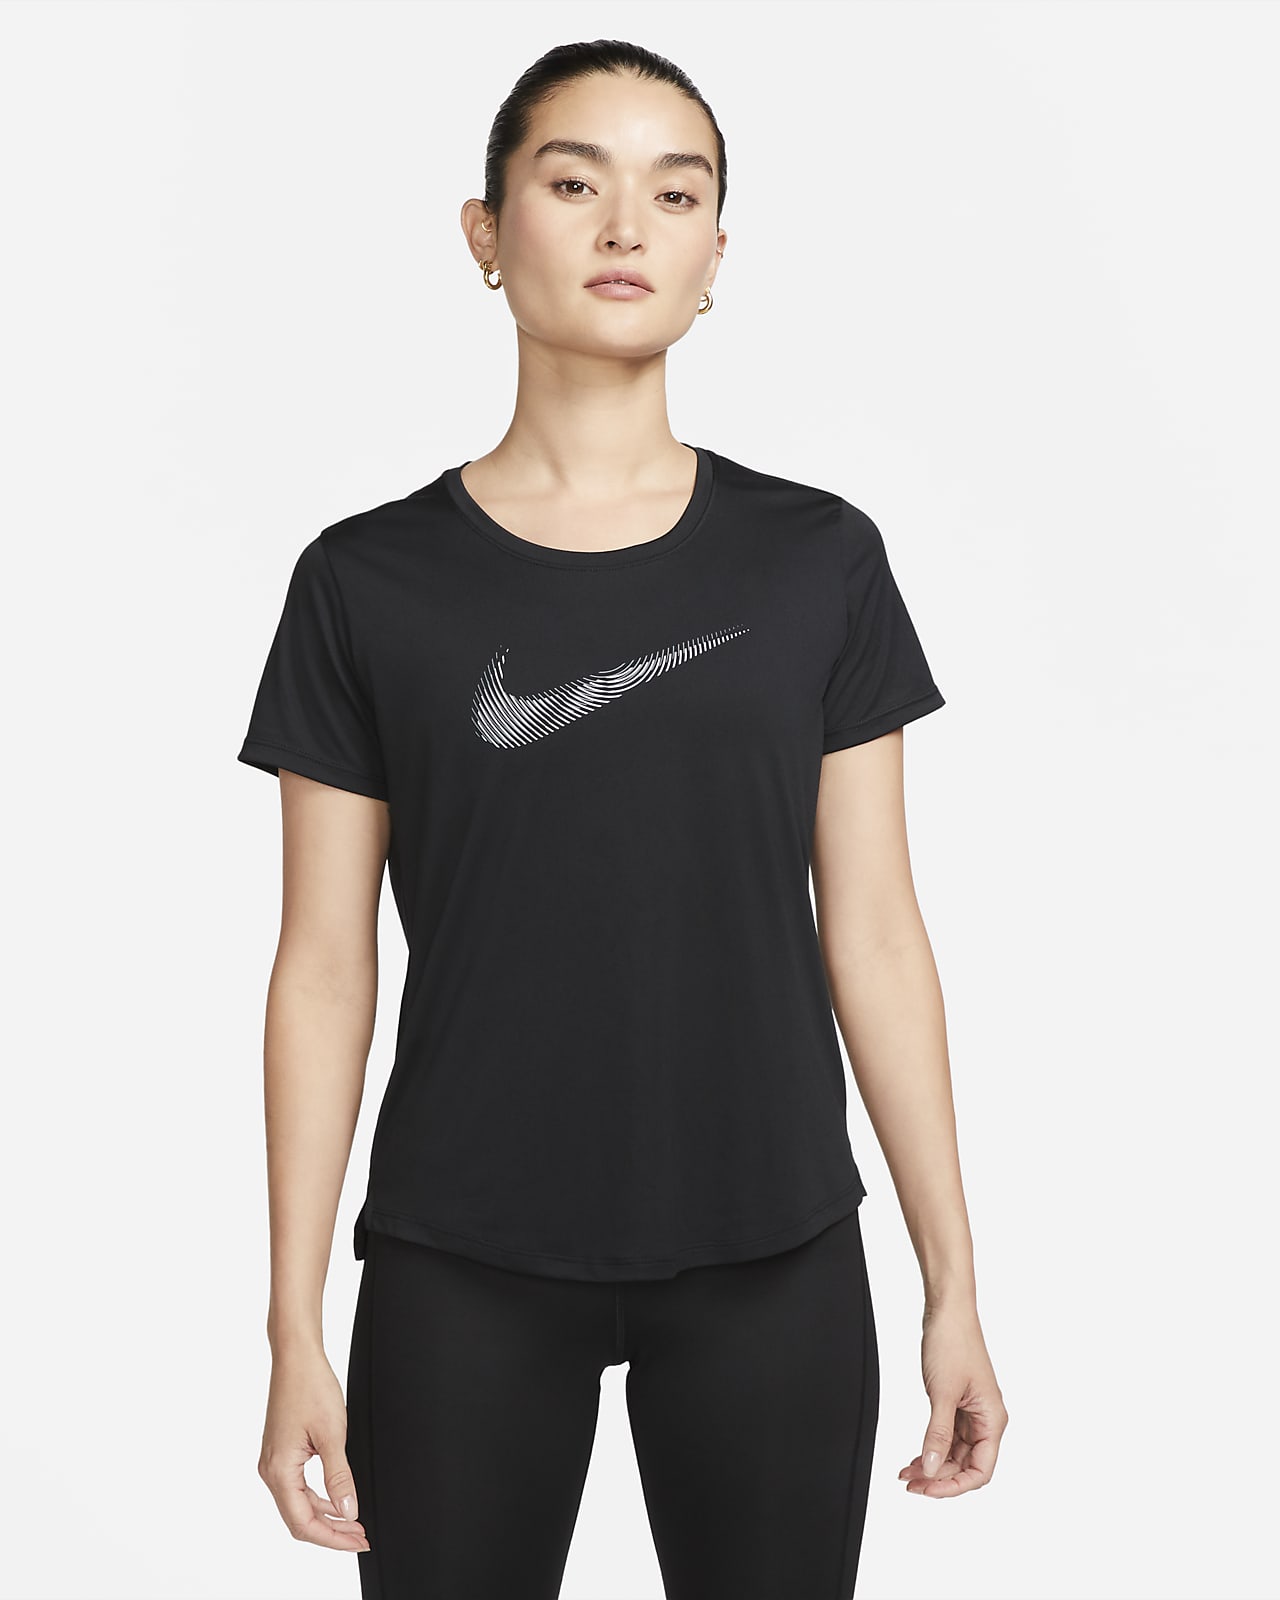 Nike Dri-FIT Swoosh 女款短袖跑步上衣